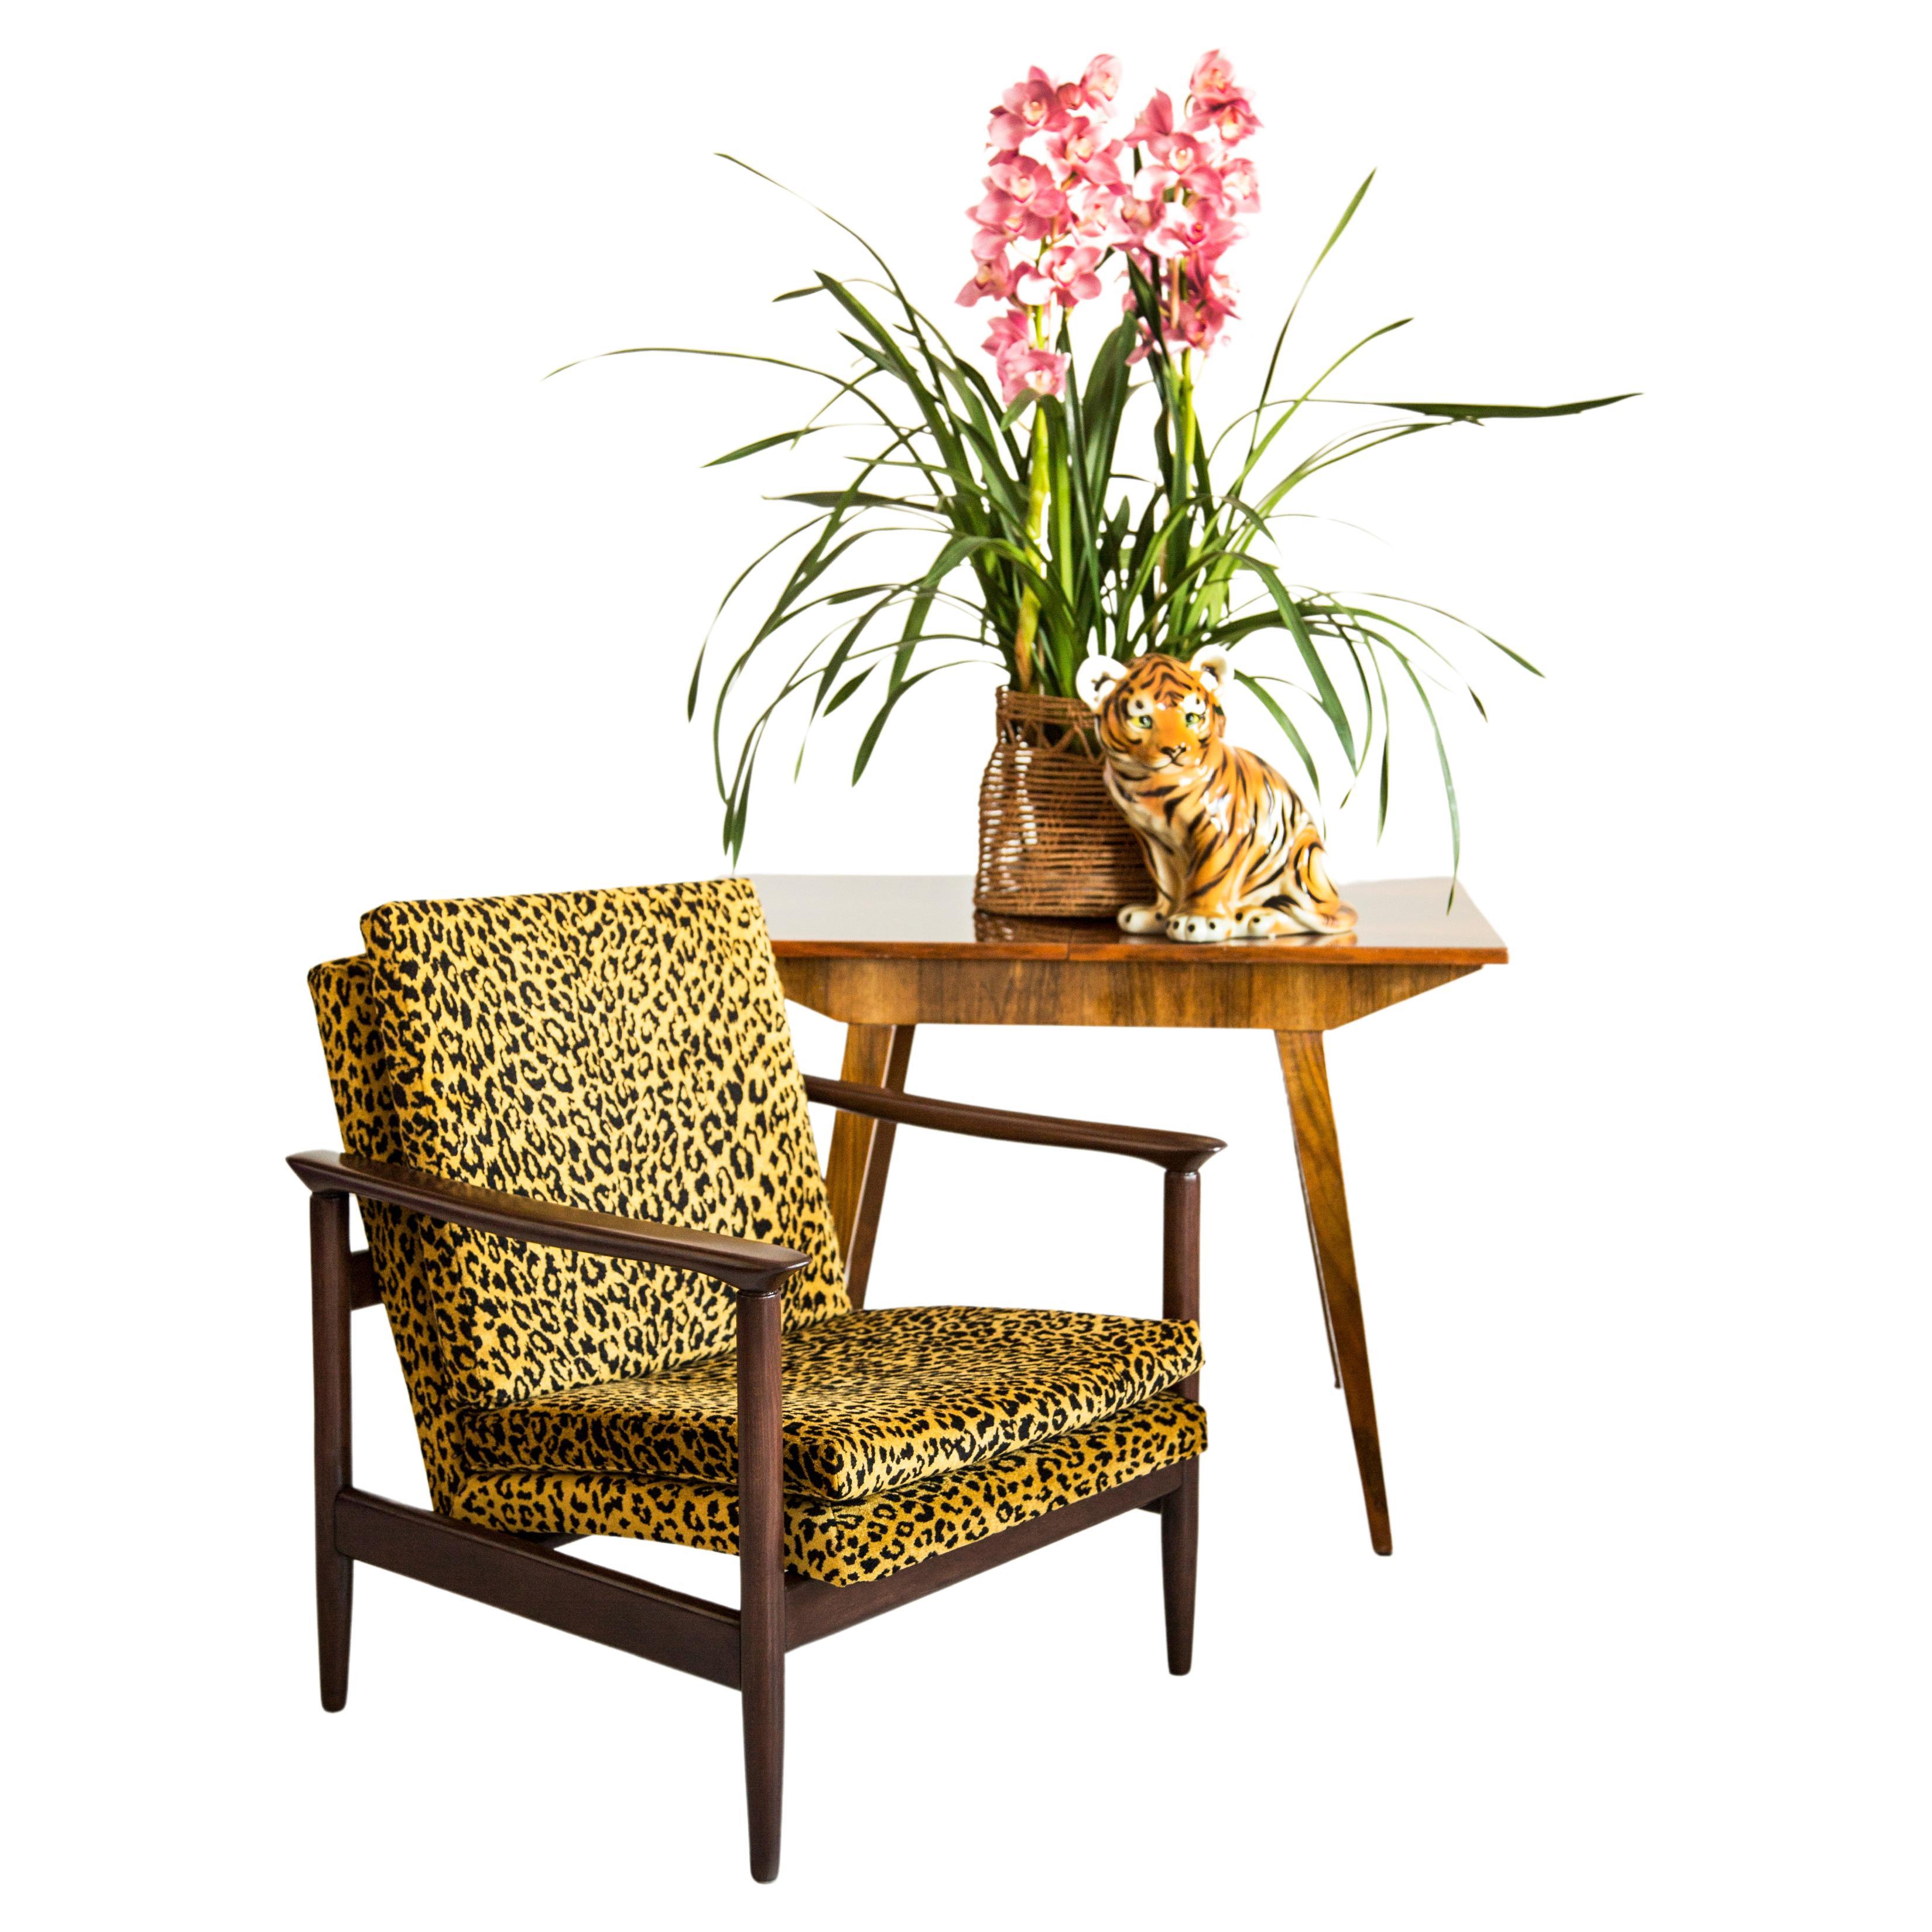 Wunderschöner Leoparden-Sessel GFM-142, entworfen von Edmund Homa, einem polnischen Architekten, Designer für Industriedesign und Innenarchitektur, Professor an der Akademie der Schönen Künste in Danzig. 

Der Sessel wurde in den 1960er Jahren in